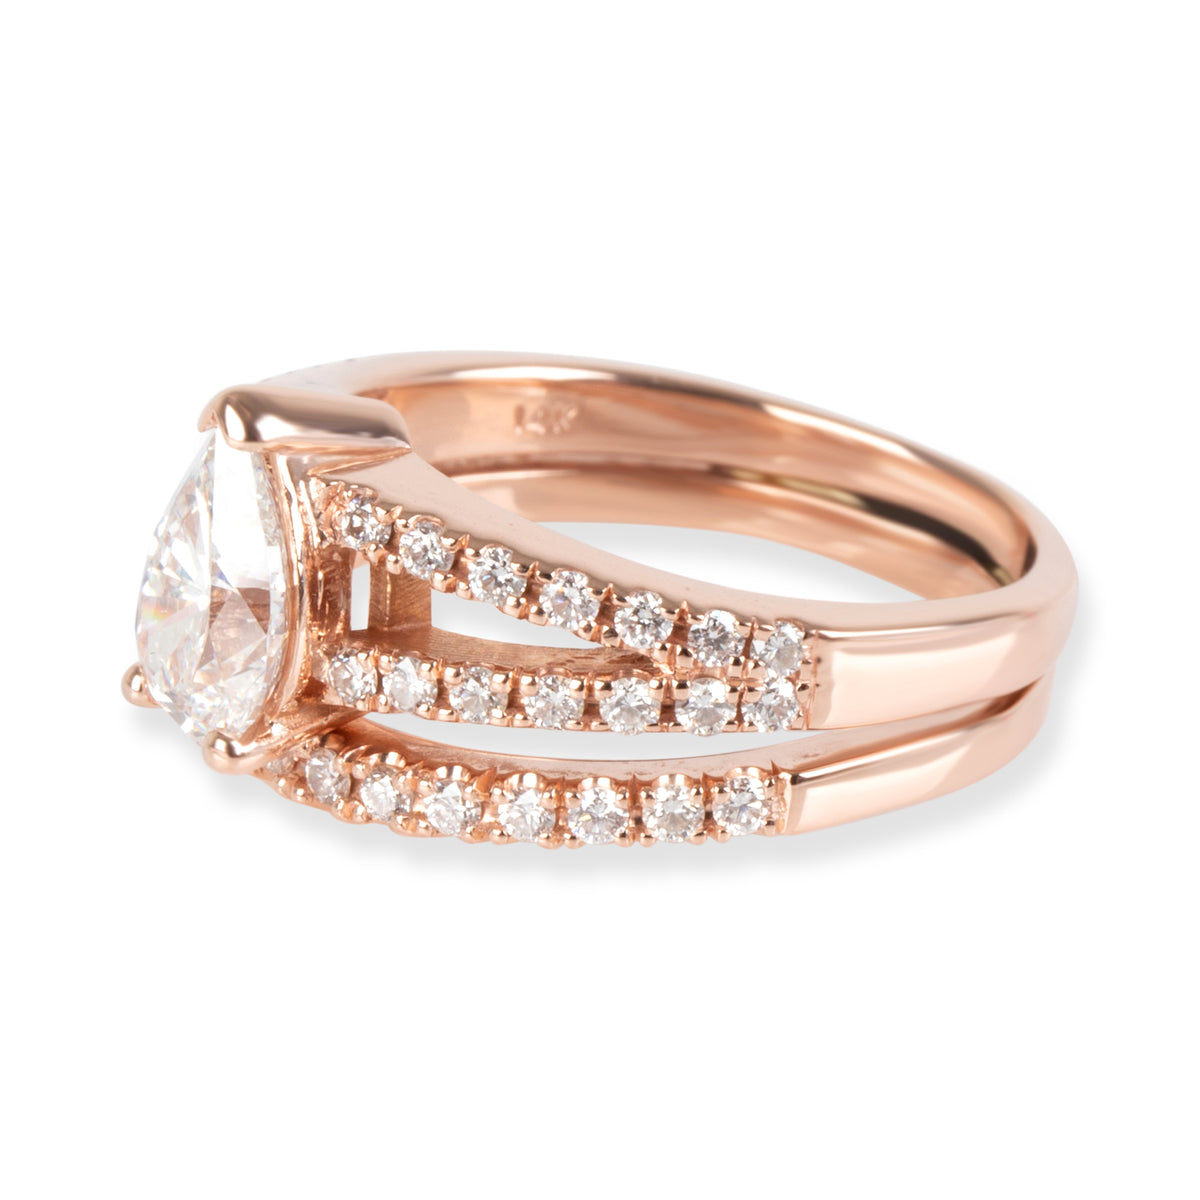 Pear Shape Diamond Engagement Ring in 14K Rose Gold G VS2 1.46 CTW